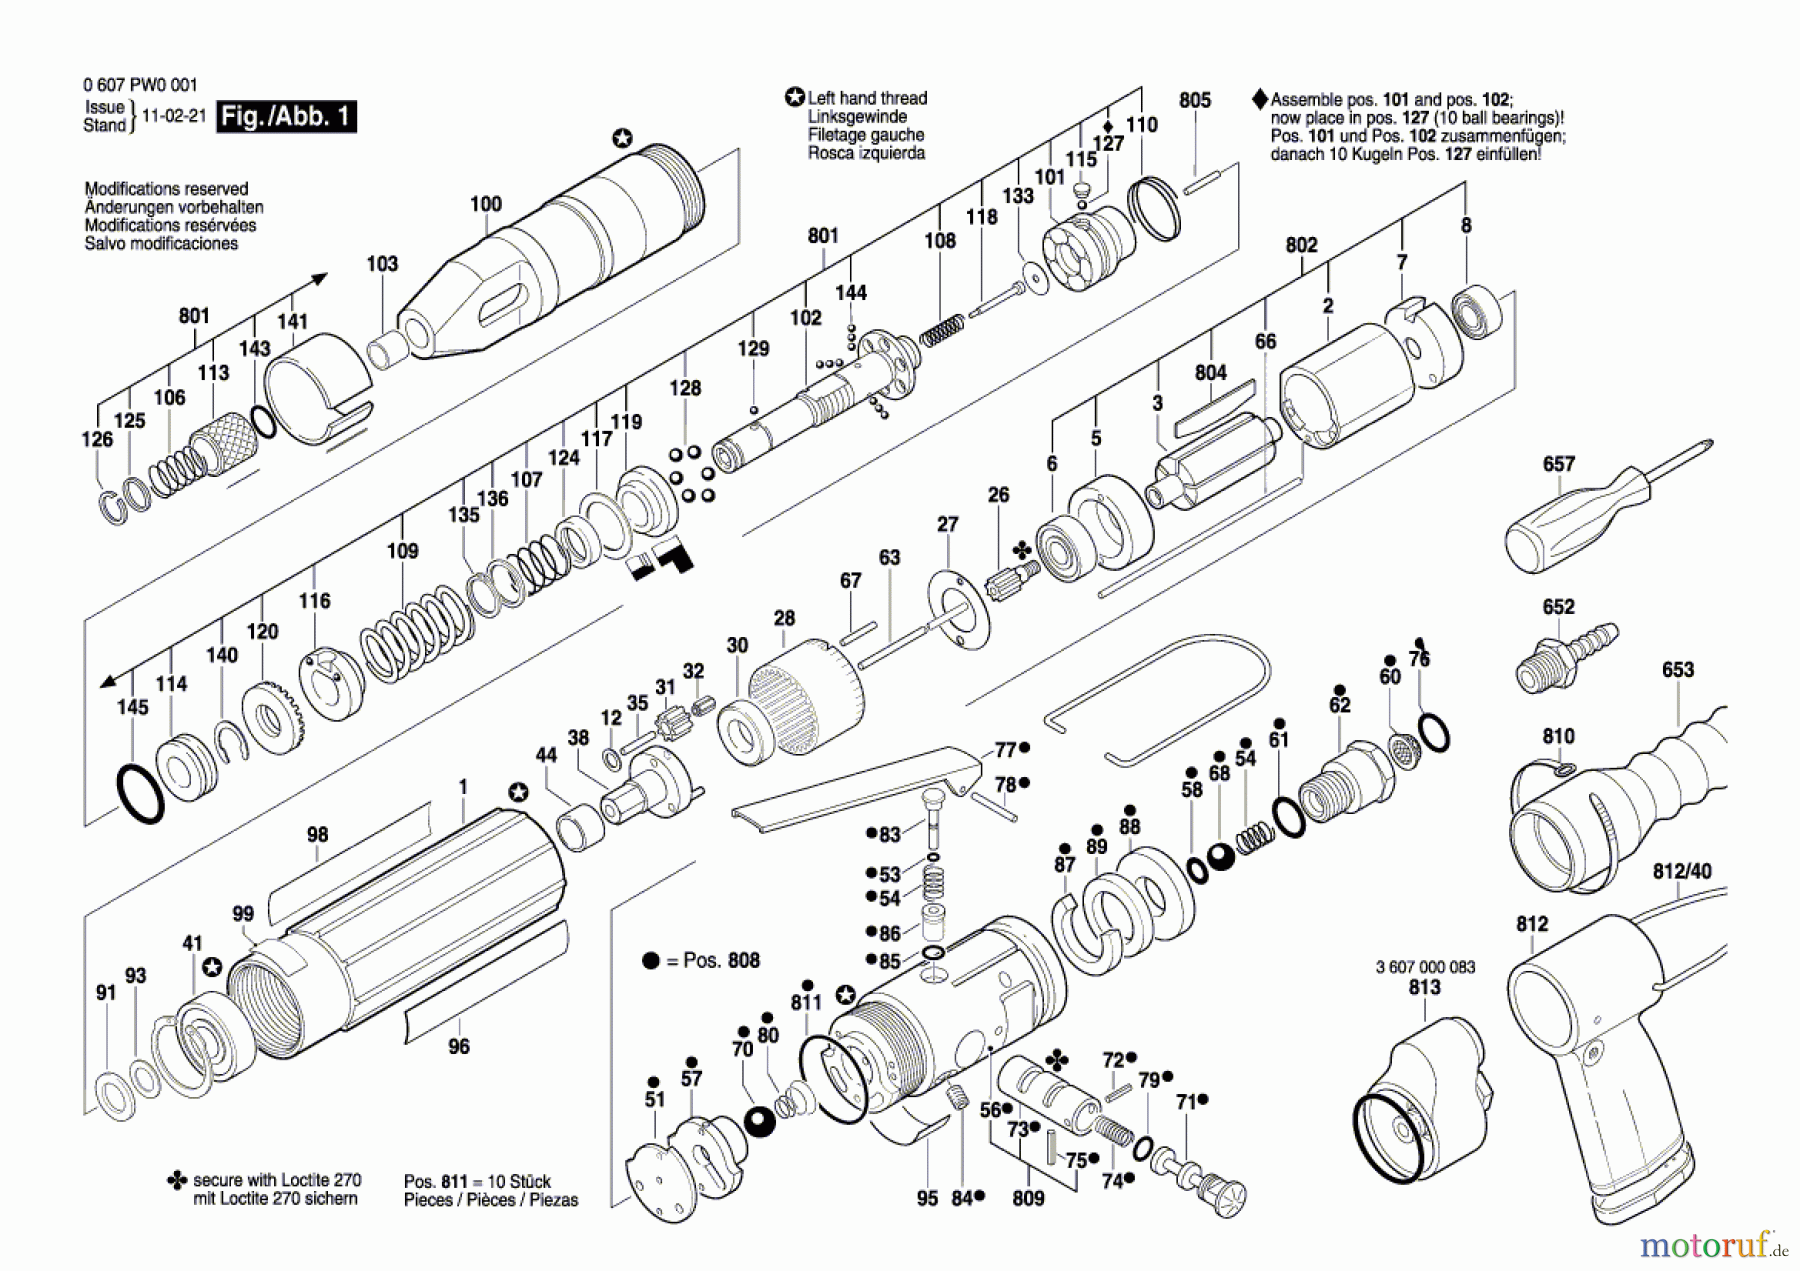  Bosch Werkzeug Schrauber 180 WATT-SERIE Seite 1